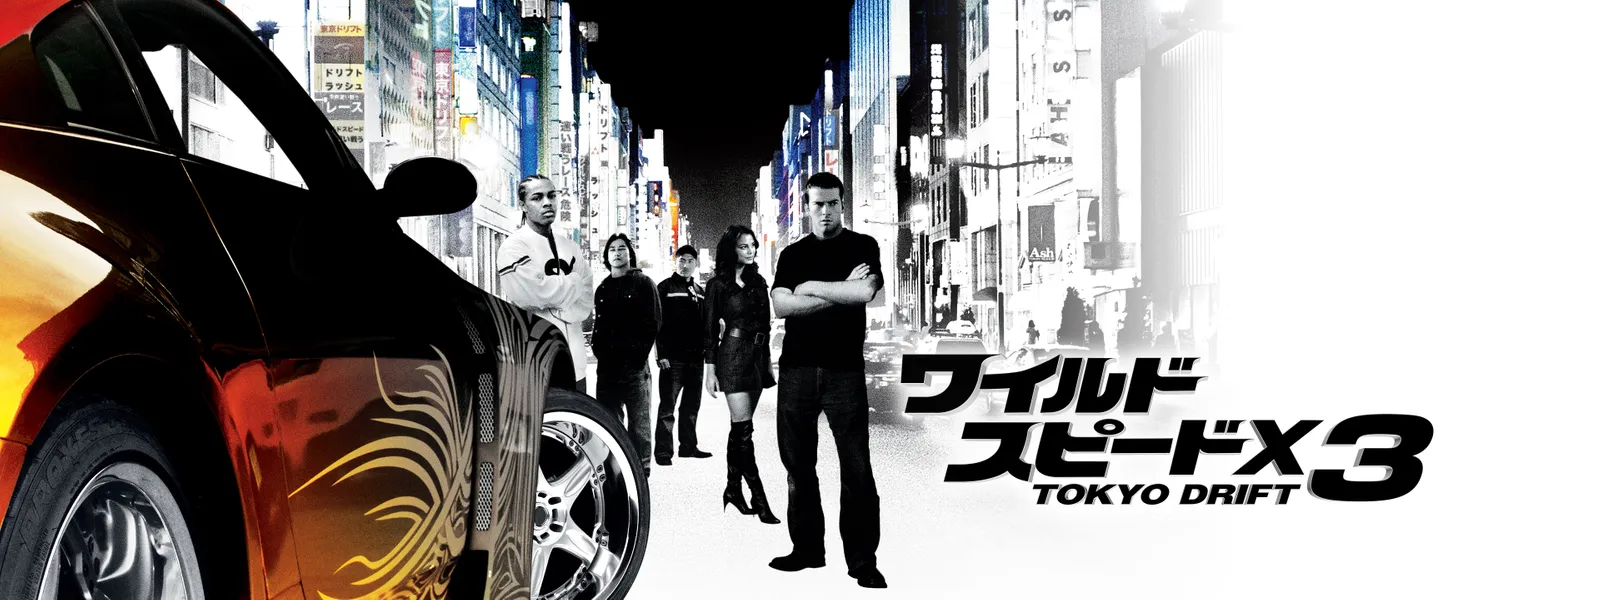 ワイルド スピードx3 Tokyo Drift が見放題 Hulu フールー お試し無料